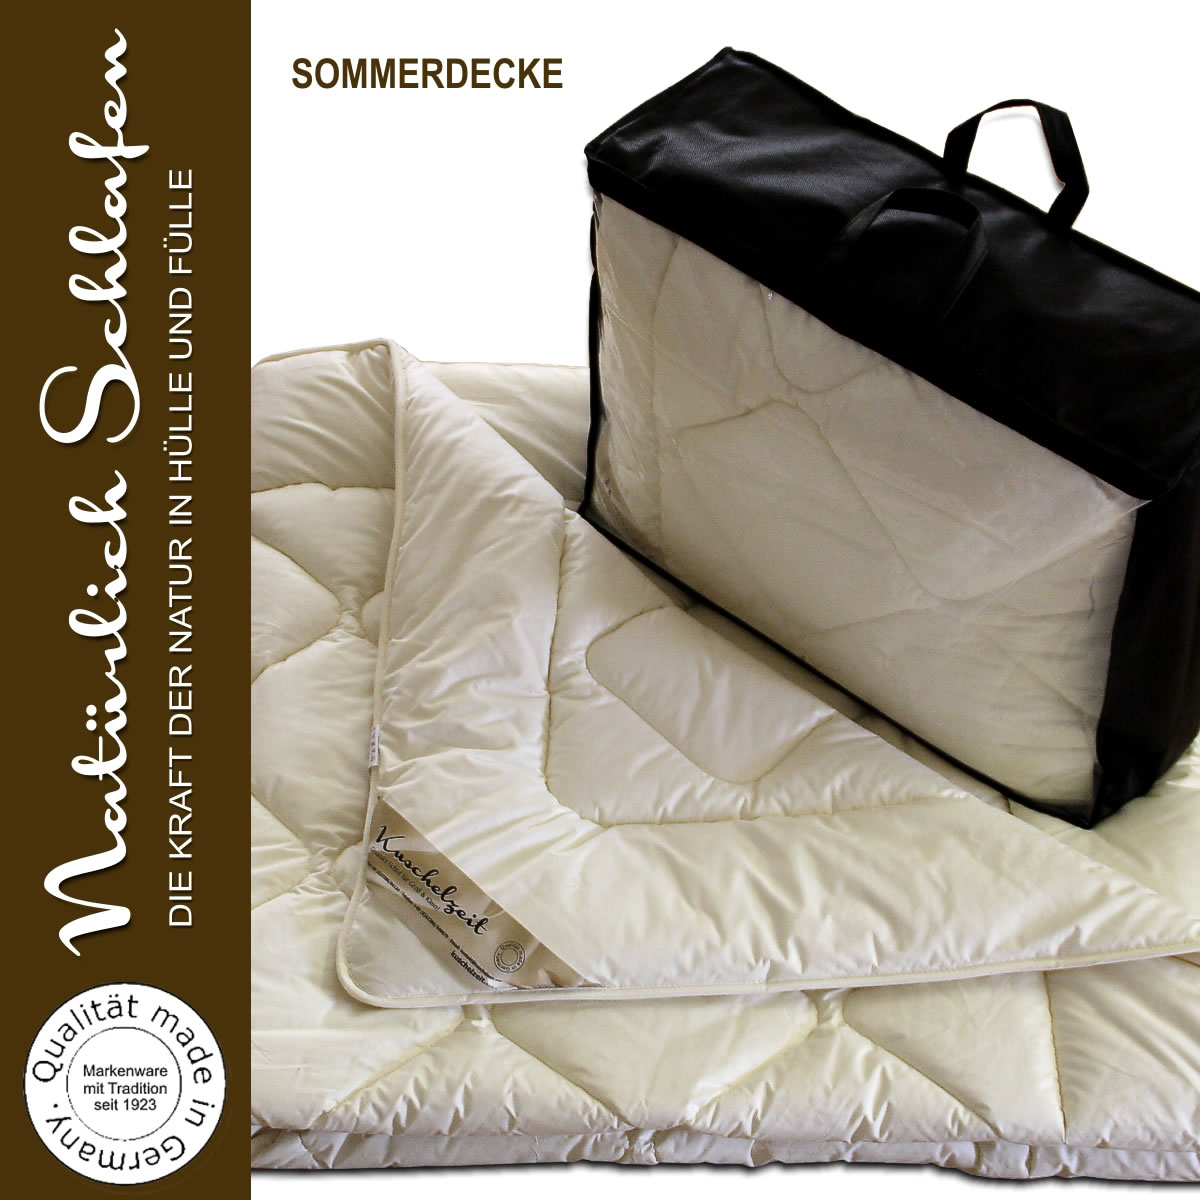 Merino Schaf-Schurwolle Winterdecke Schurwoll Winterbett Duo-Bett Bettdecke warm 